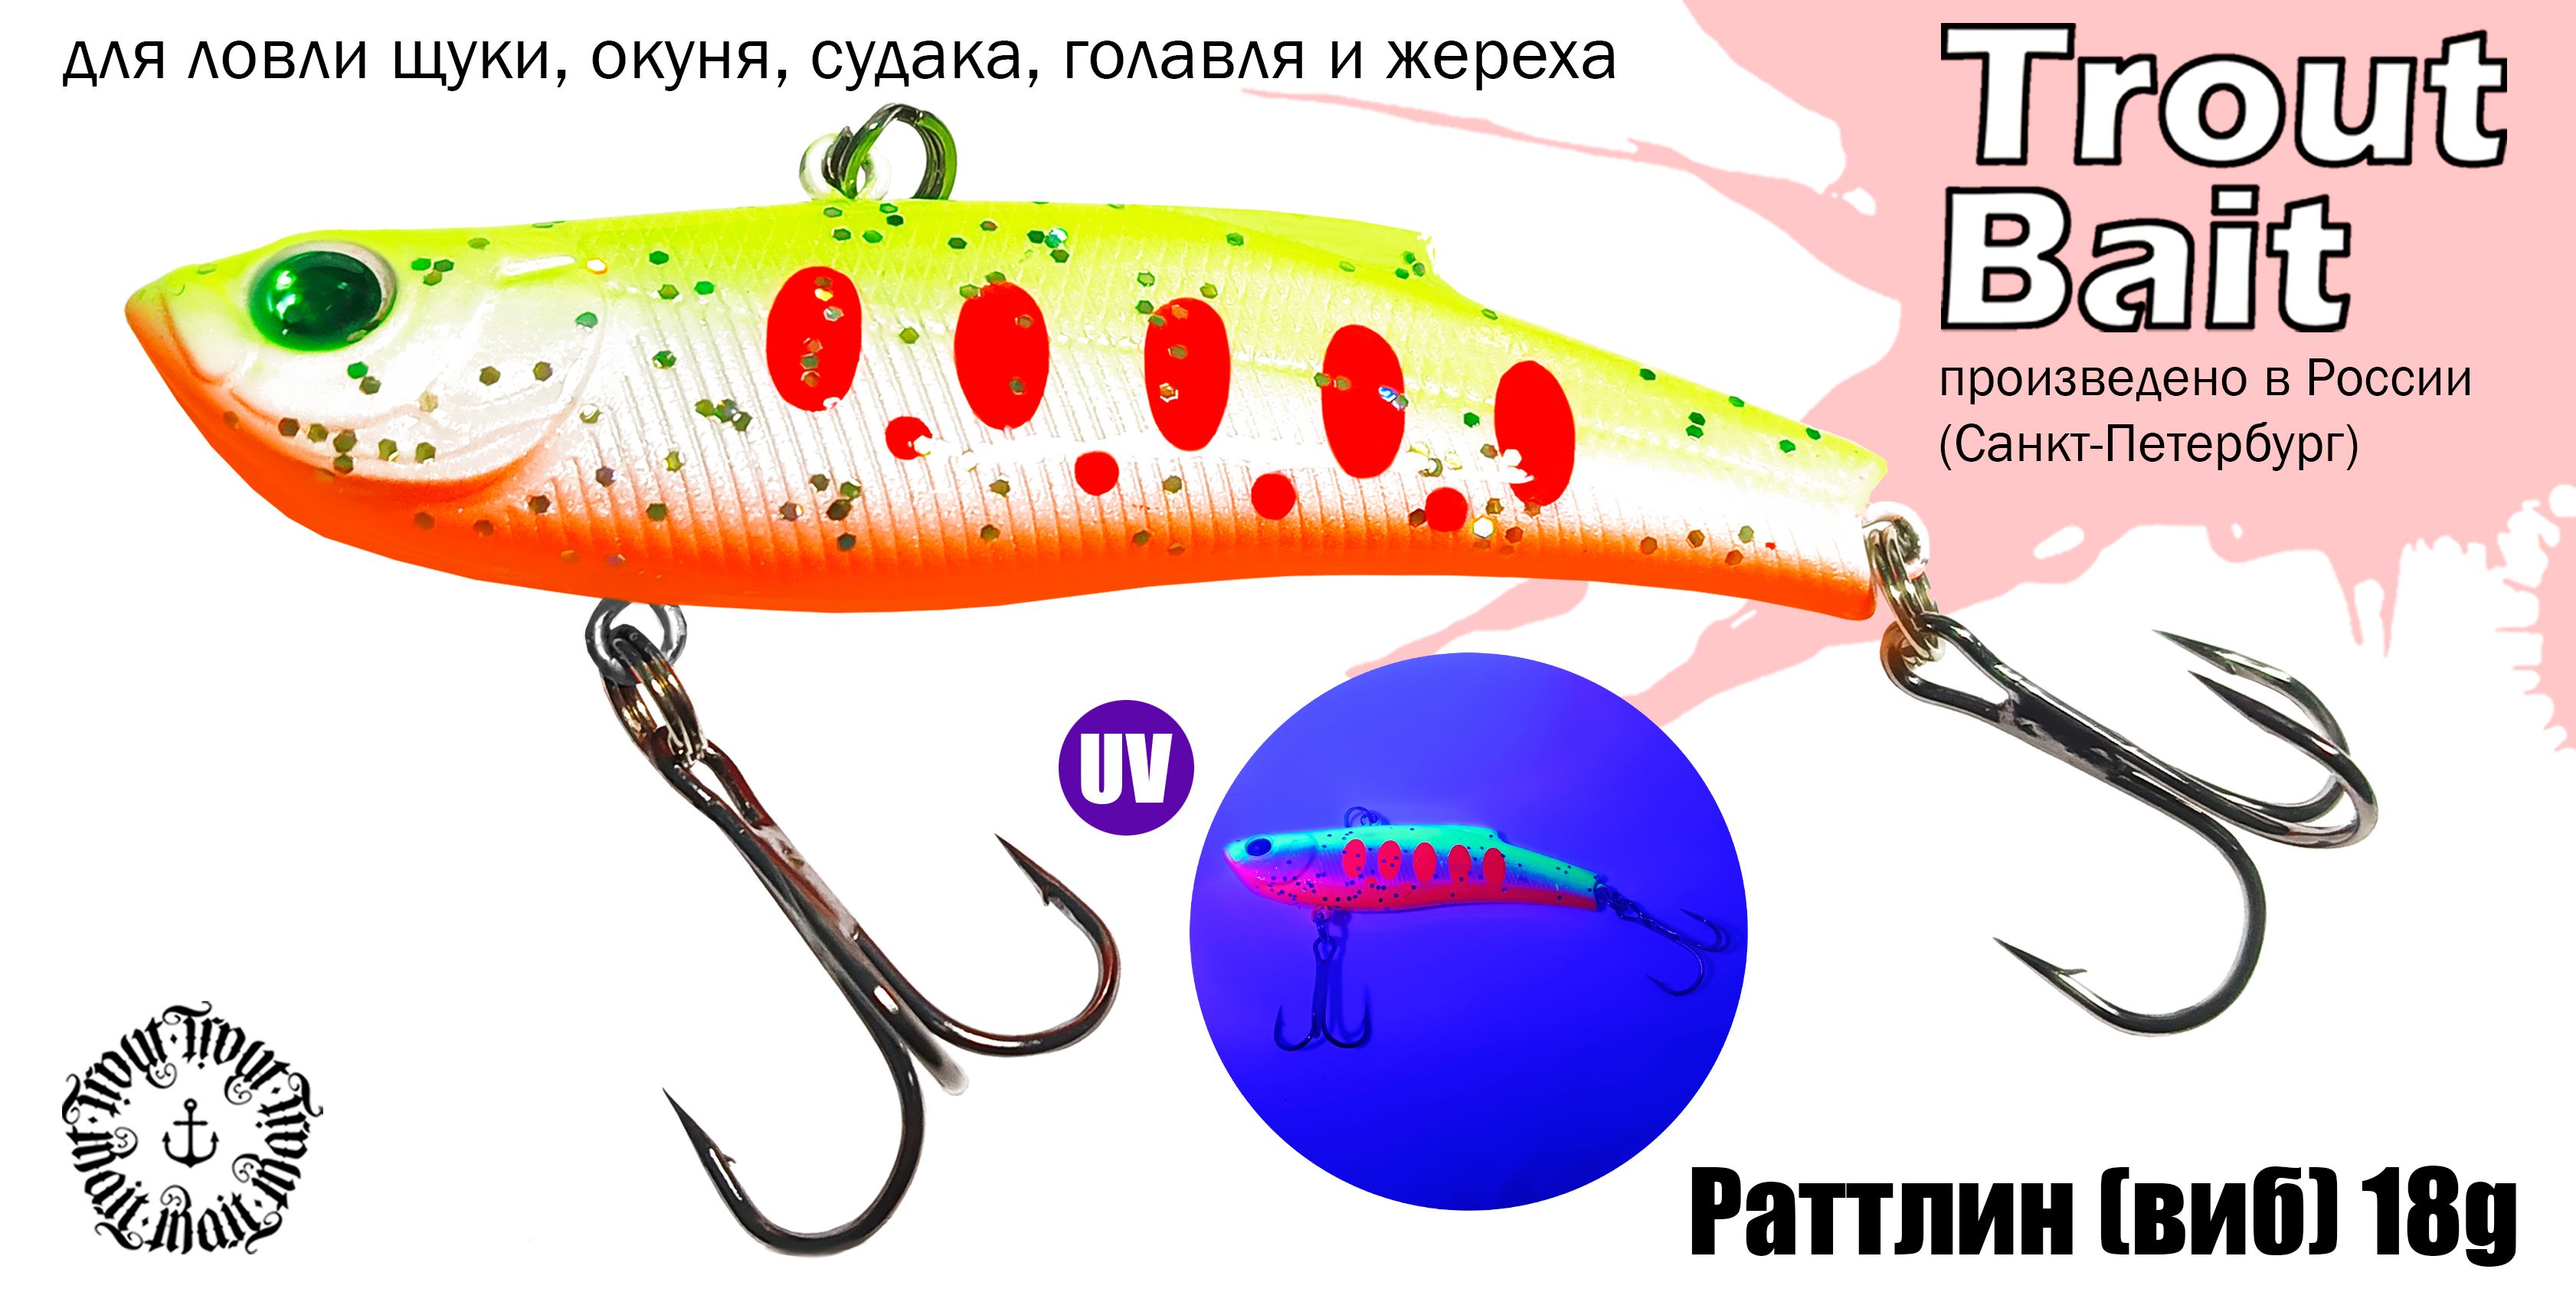 Сезон ловли рыбы в России: основные правила и рекомендации